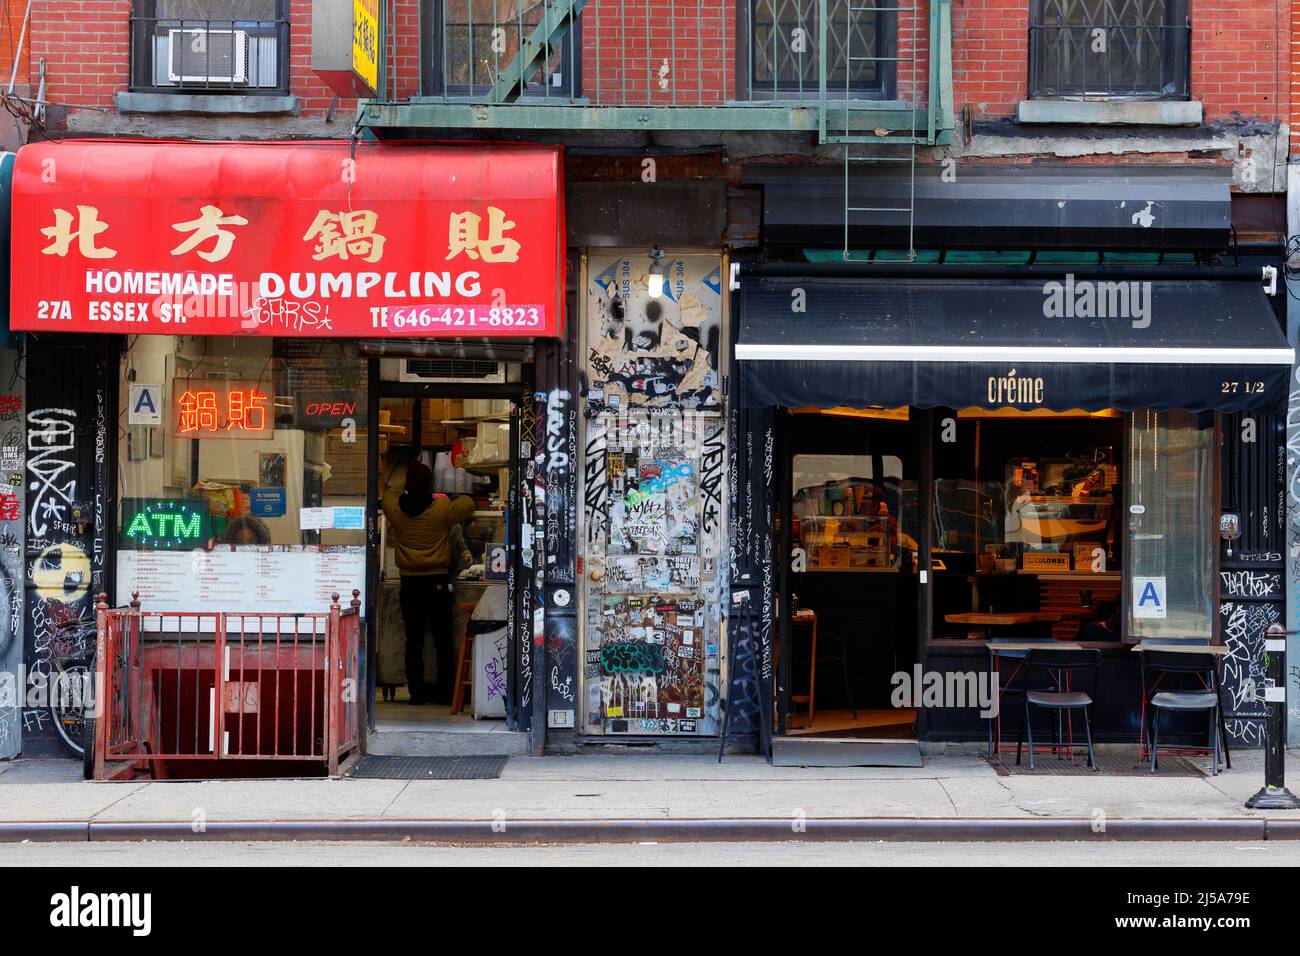 Dumpling maison, Creme, 27 Essex St, New York, New York, NYC photo d'un boulonnage frit, et un café matcha dans le Lower East Side Banque D'Images